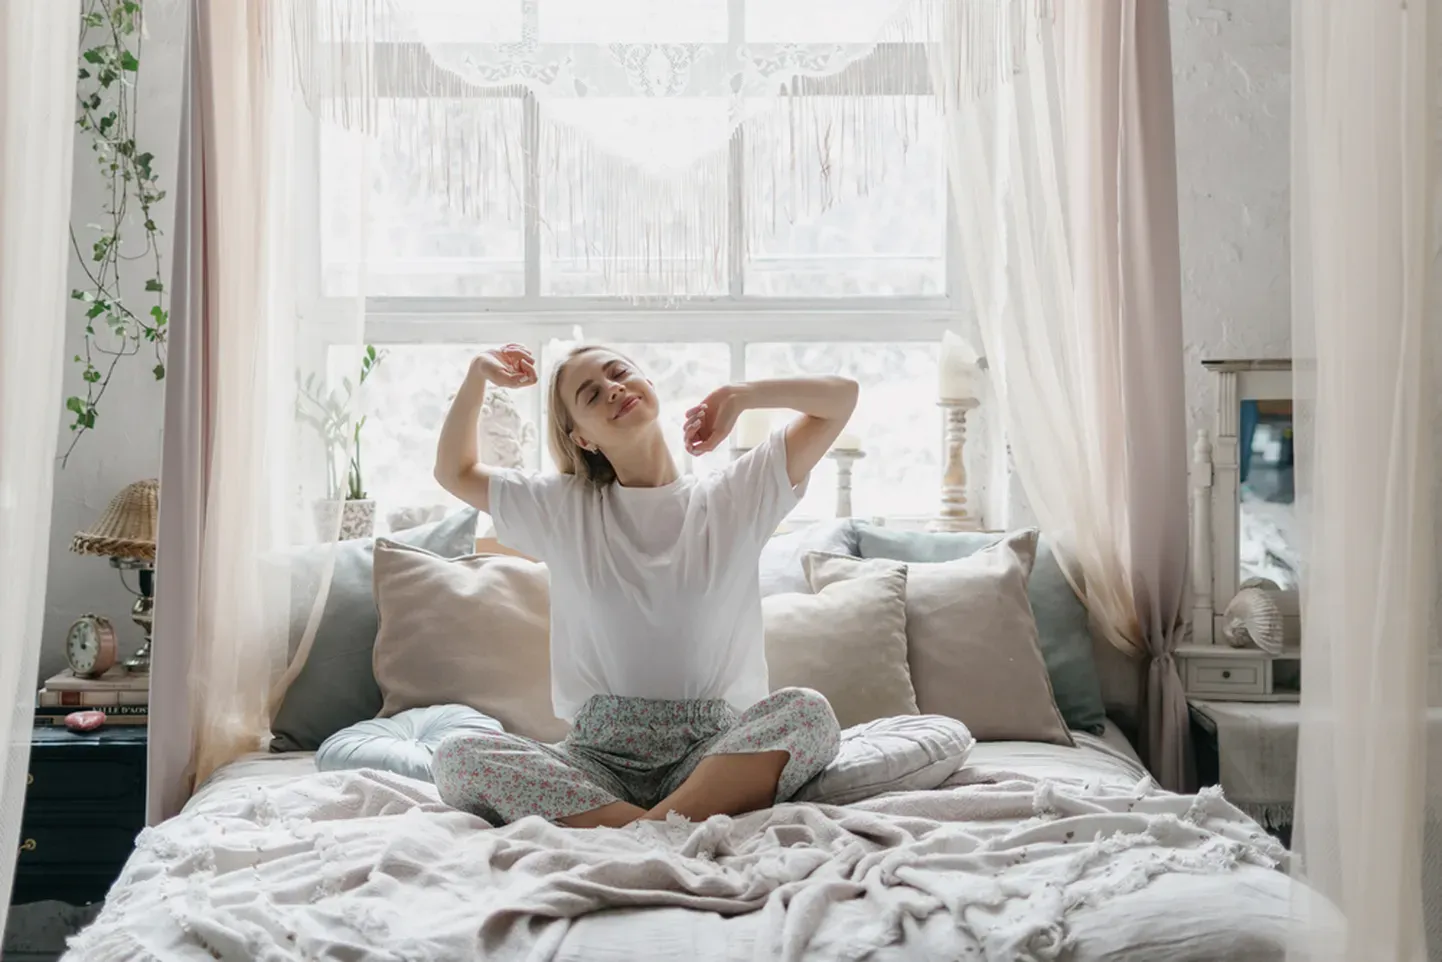 25 минут дневного сна могут дать огромный заряд бодрости.